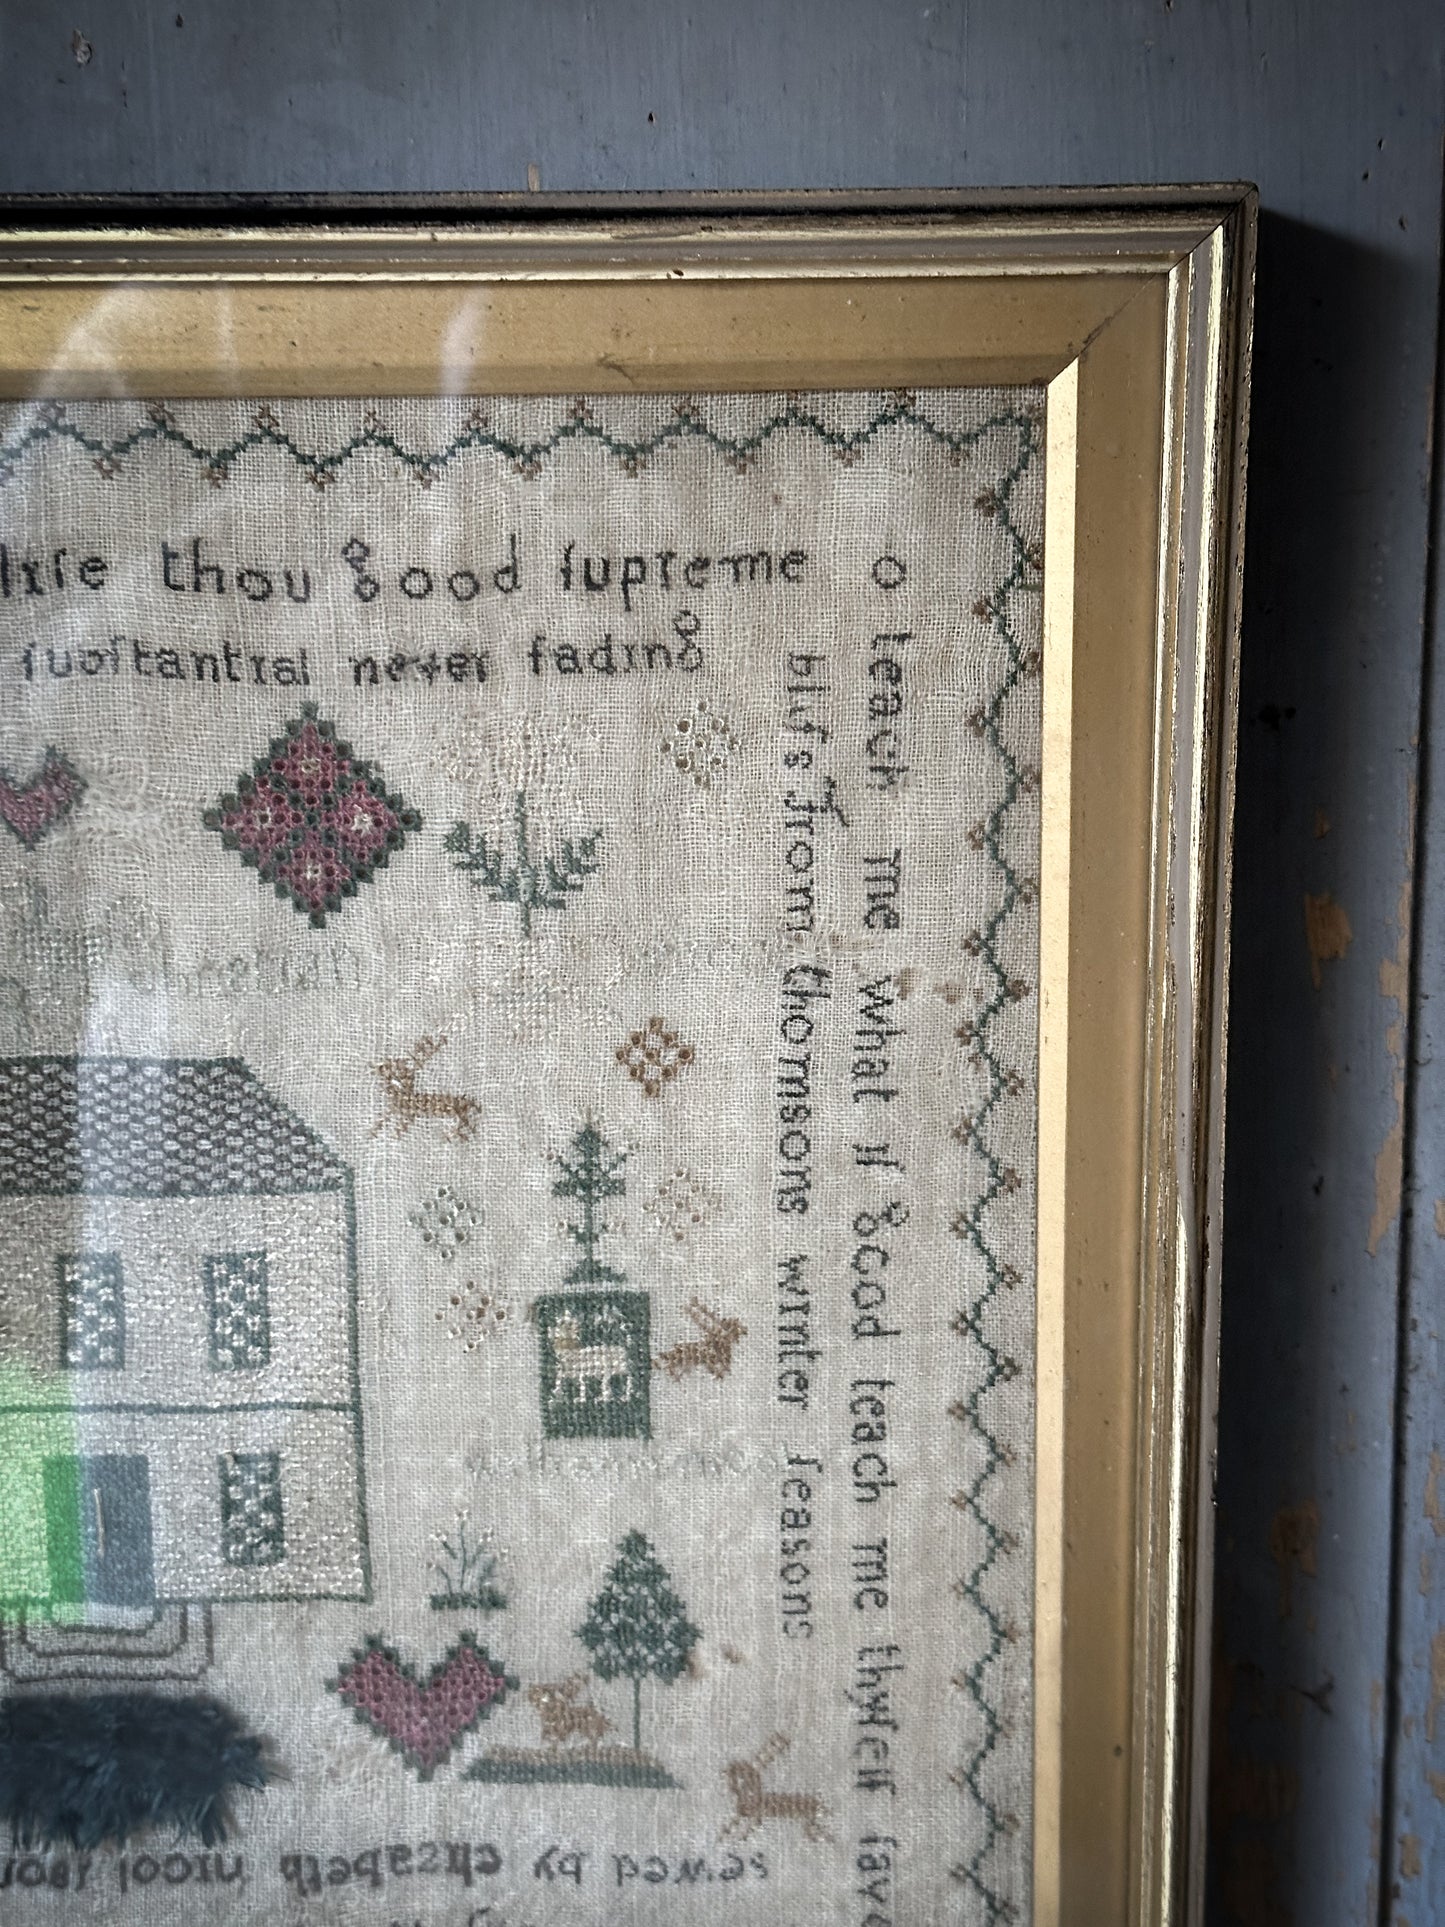 The most wonderful framed antique stitched sampler